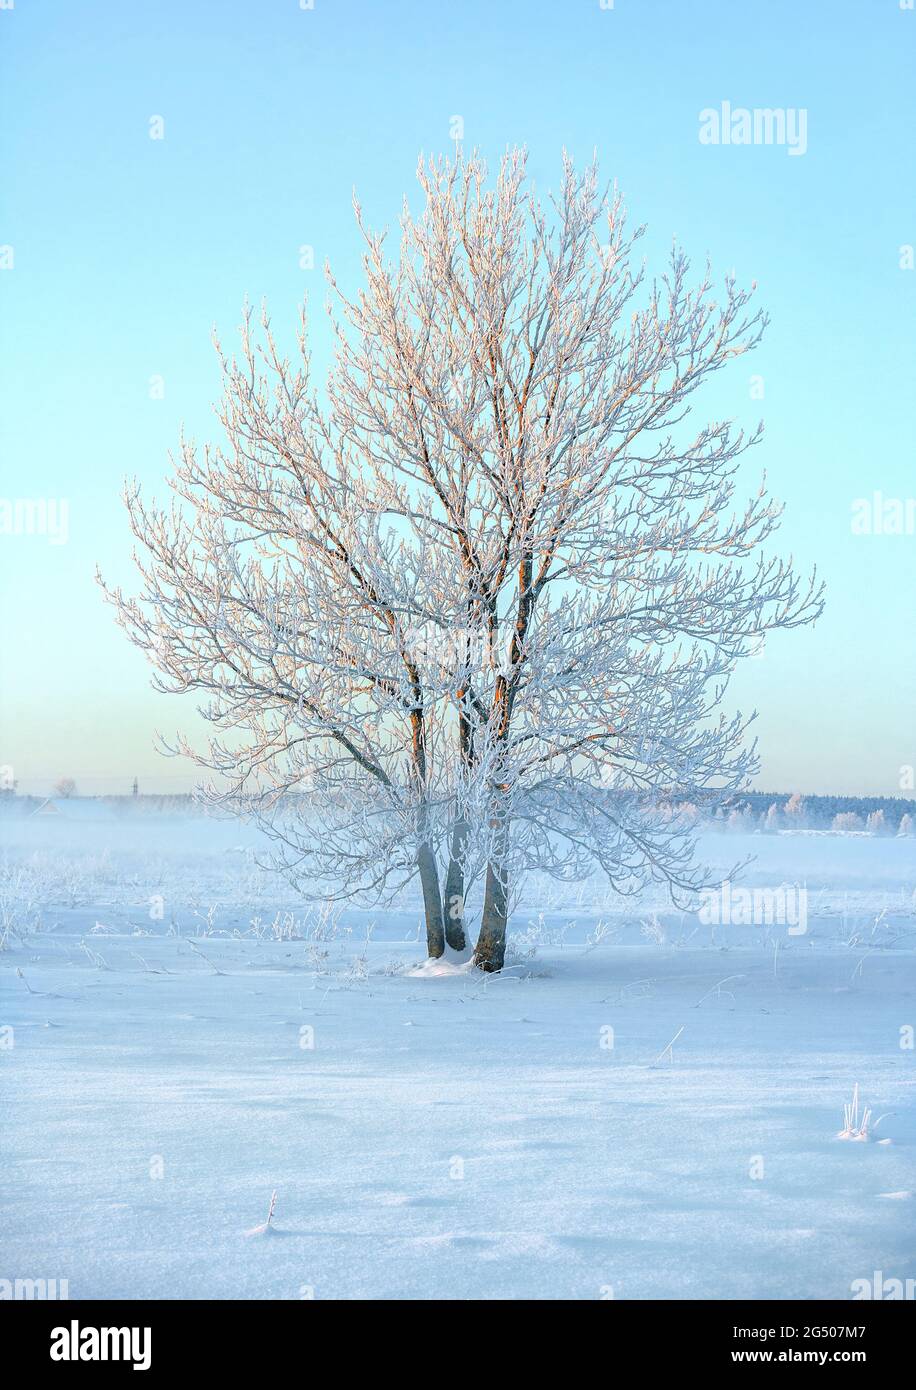 Paisaje invernal con árbol congelado solitario y niebla matutina en el área rural Foto de stock